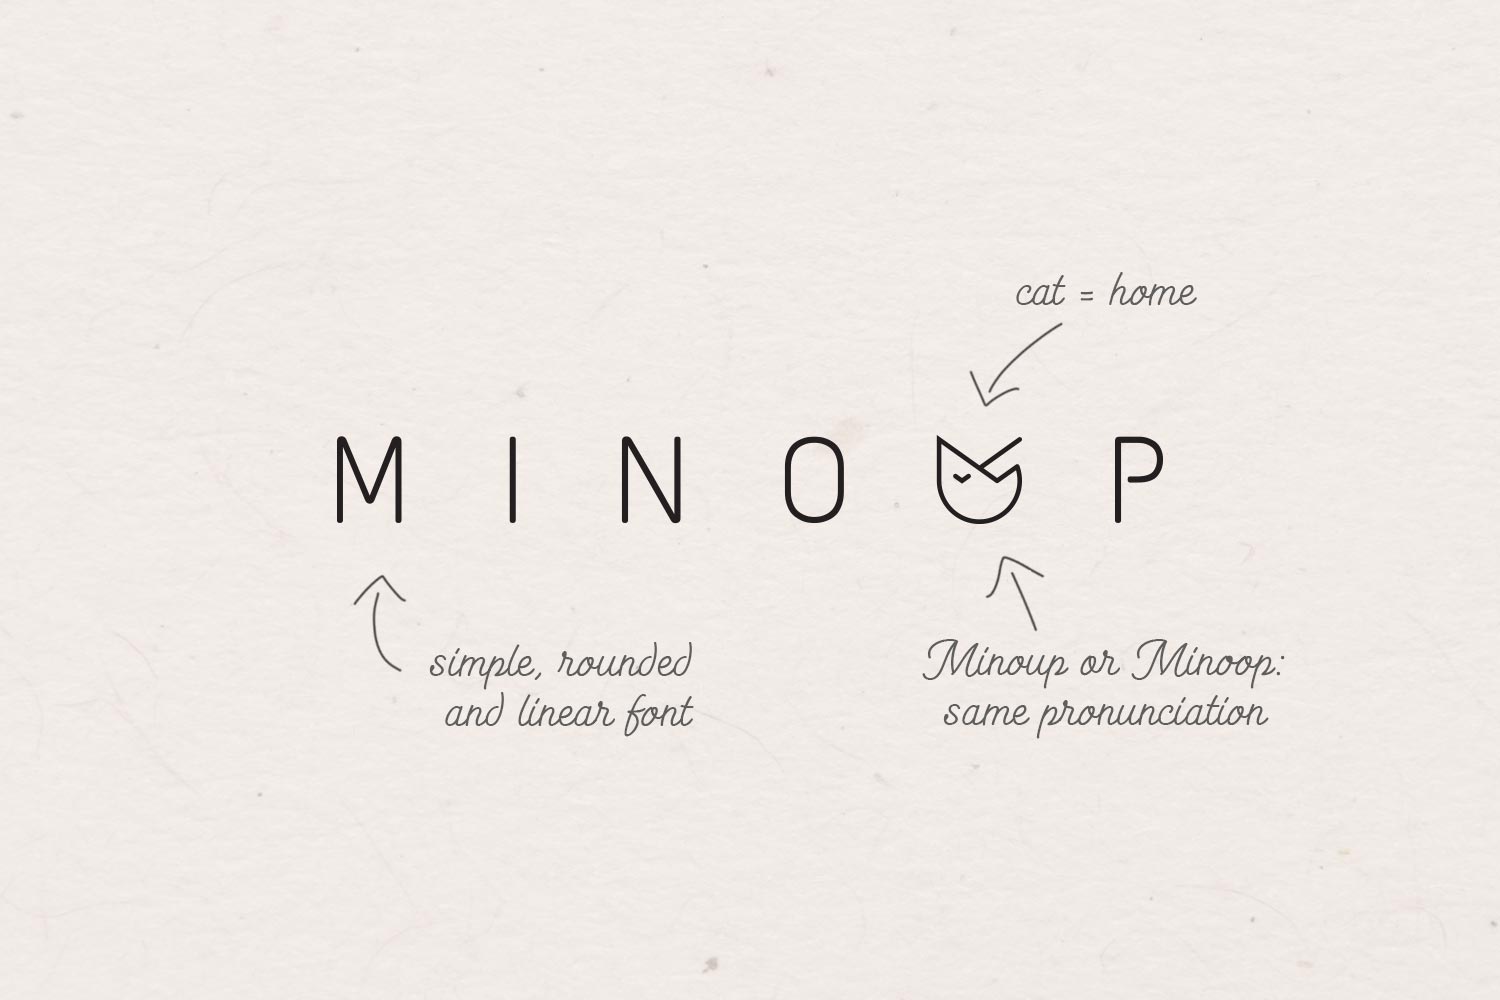 Minoop card